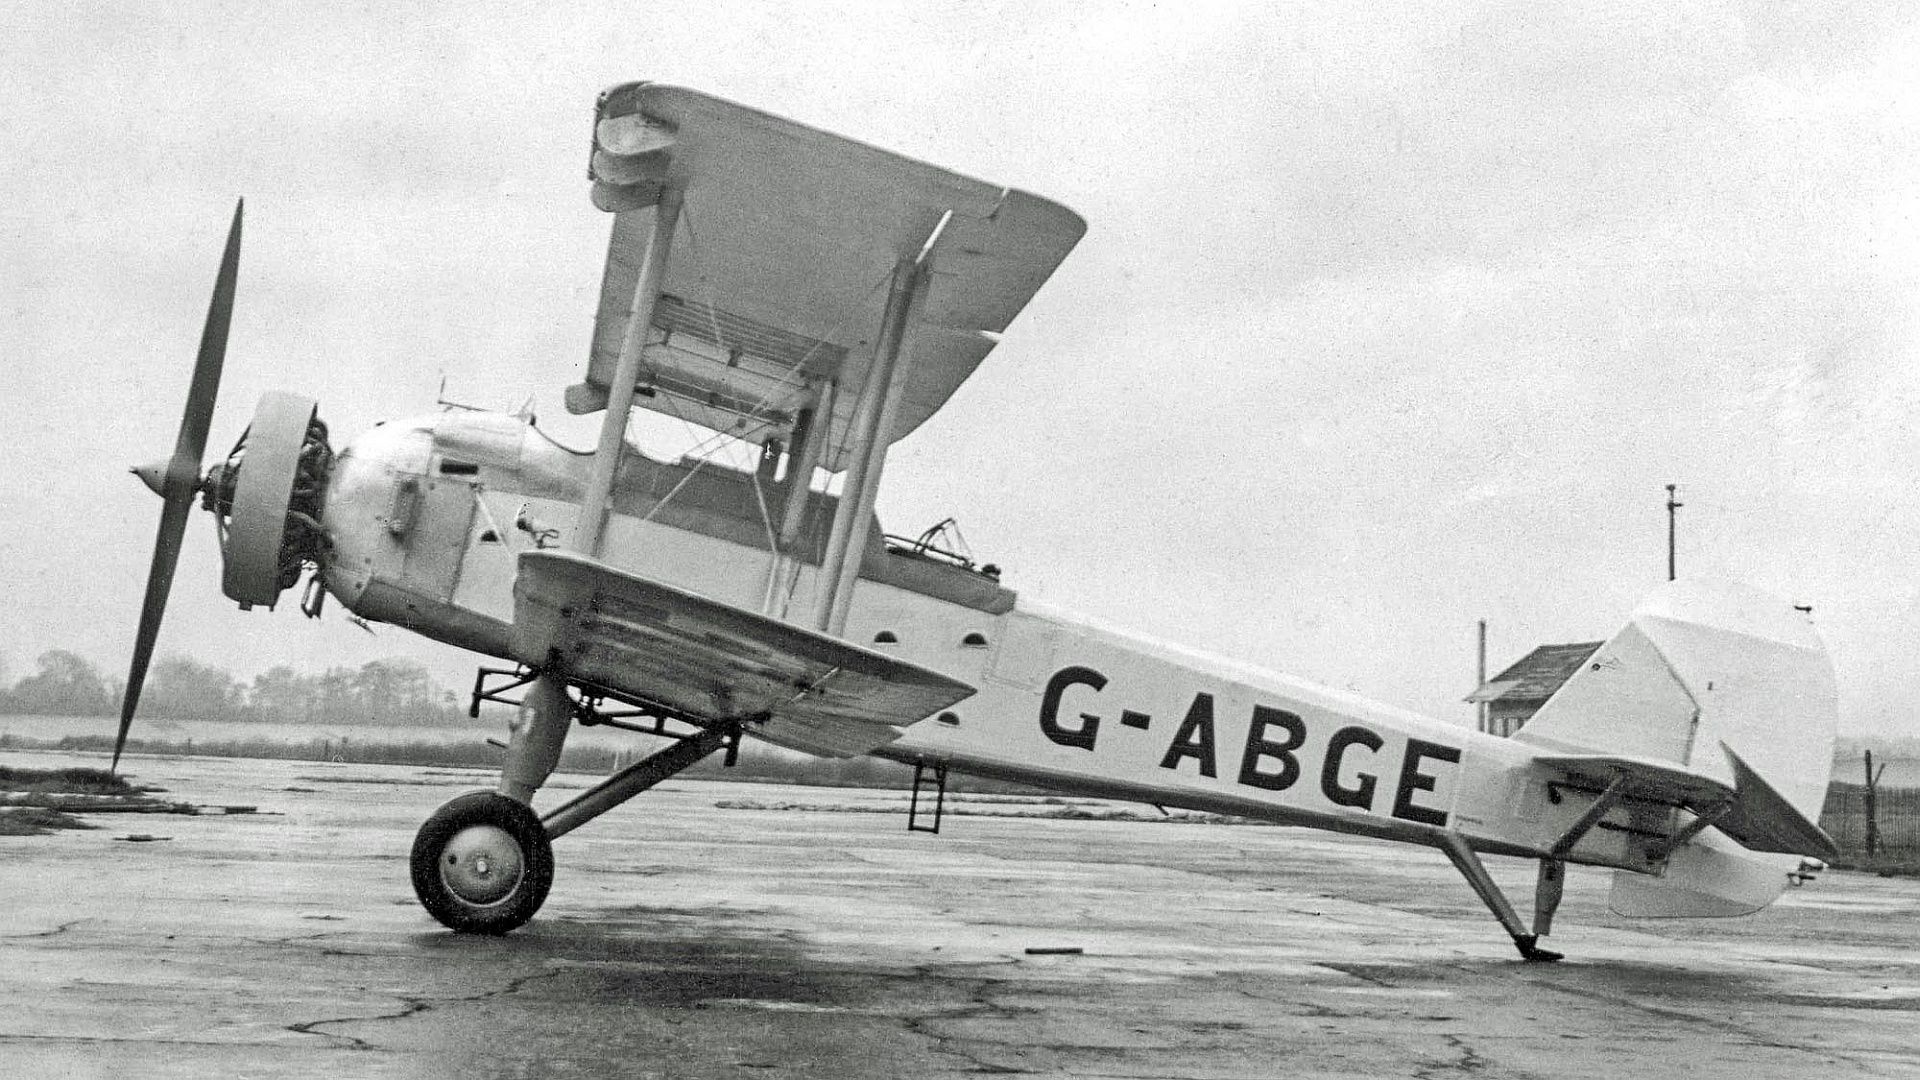 ABGE For The 1930 Paris Air Show